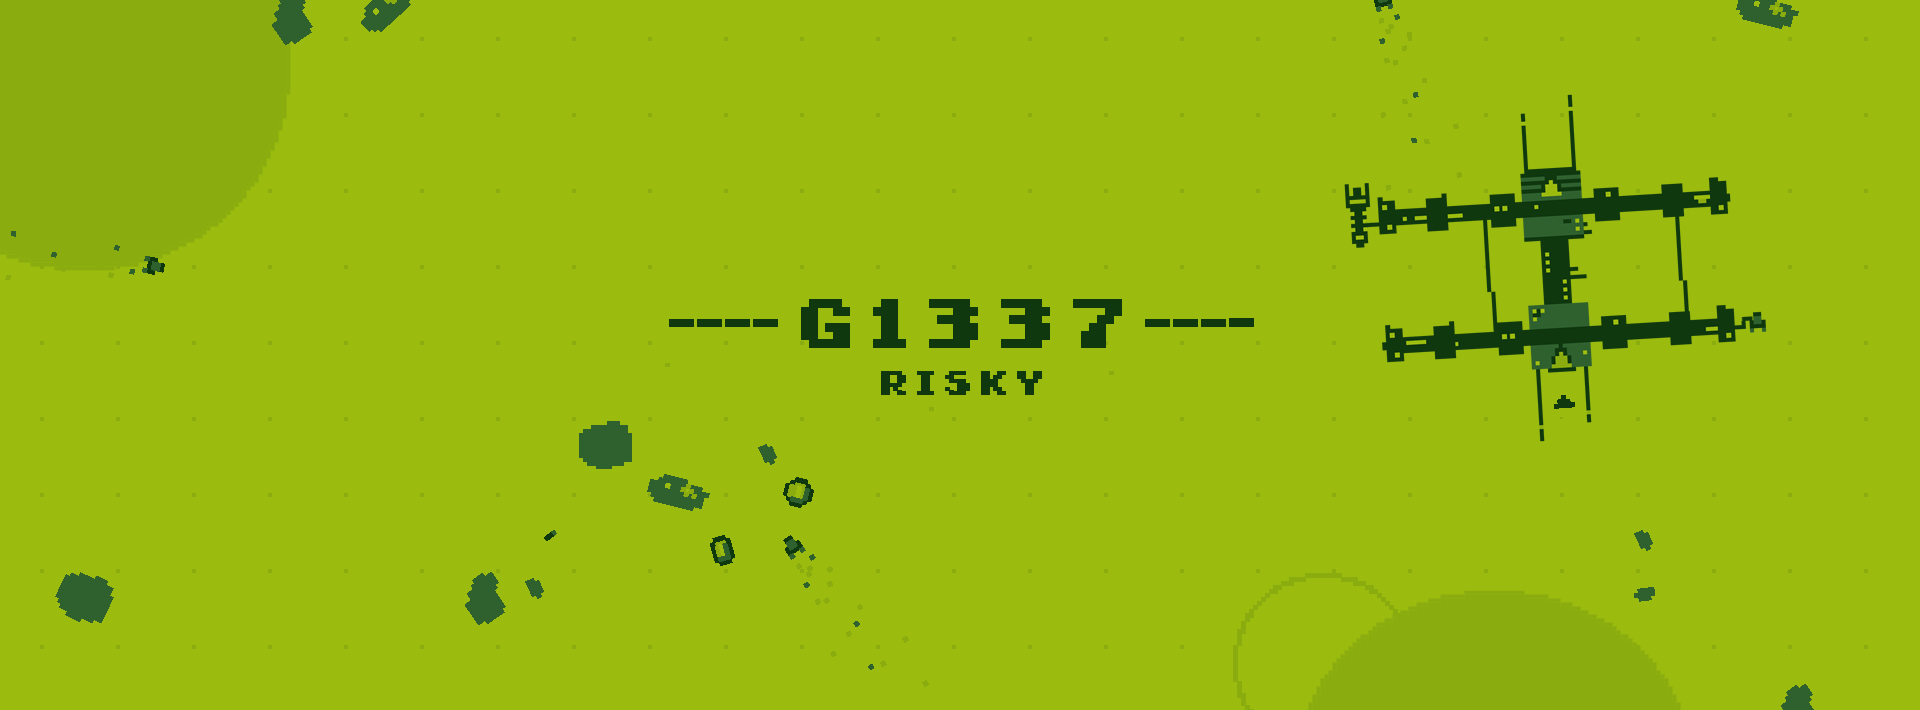 G1337 RISKY